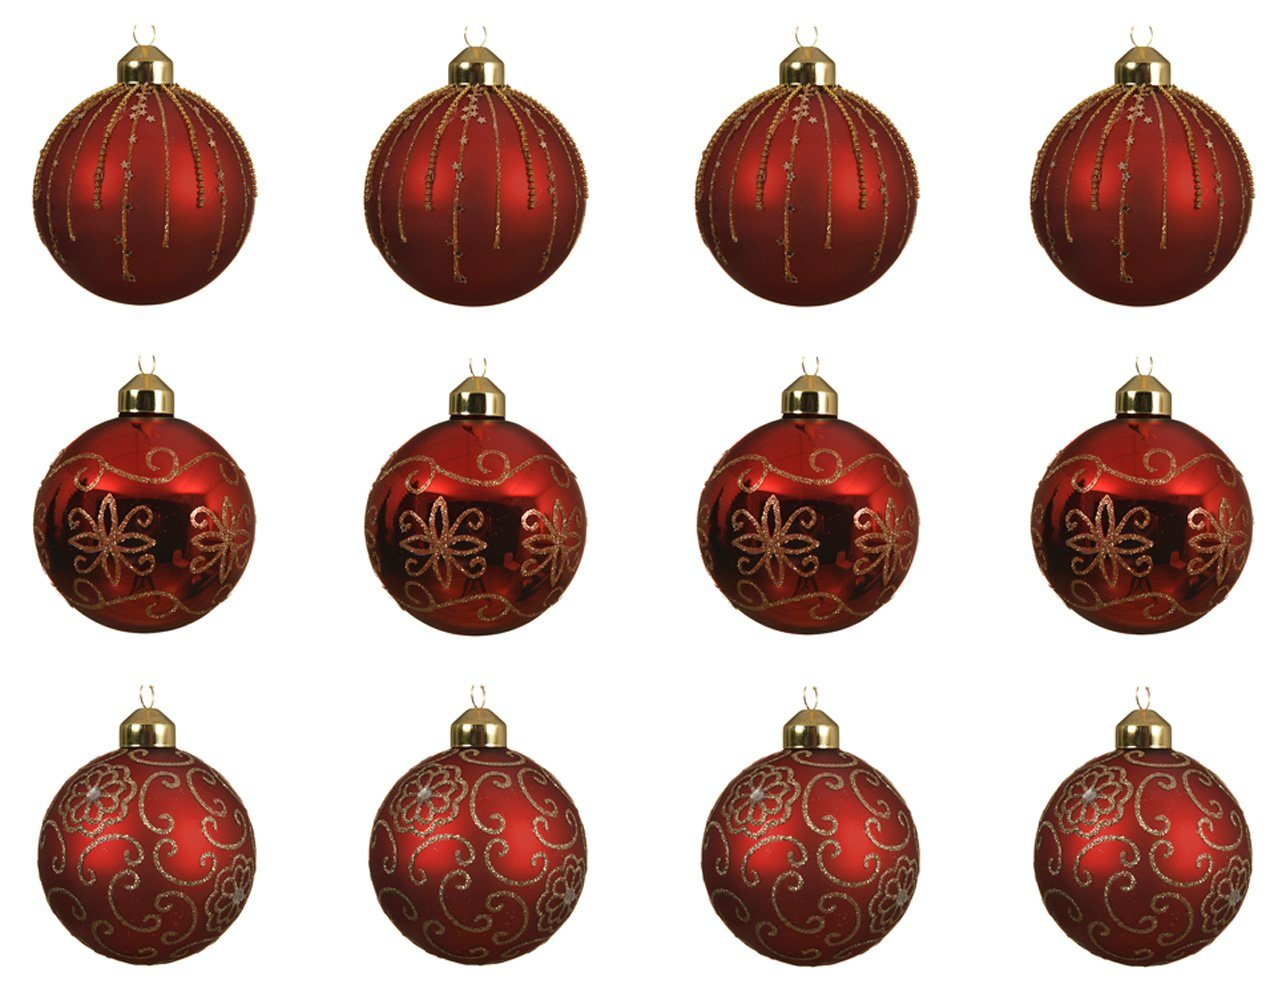 Decoris season decorations Weihnachtsbaumkugel, Weihnachtskugeln Glas mit Glitzer Muster 8cm weihnachtsrot, 12er Set von Decoris season decorations